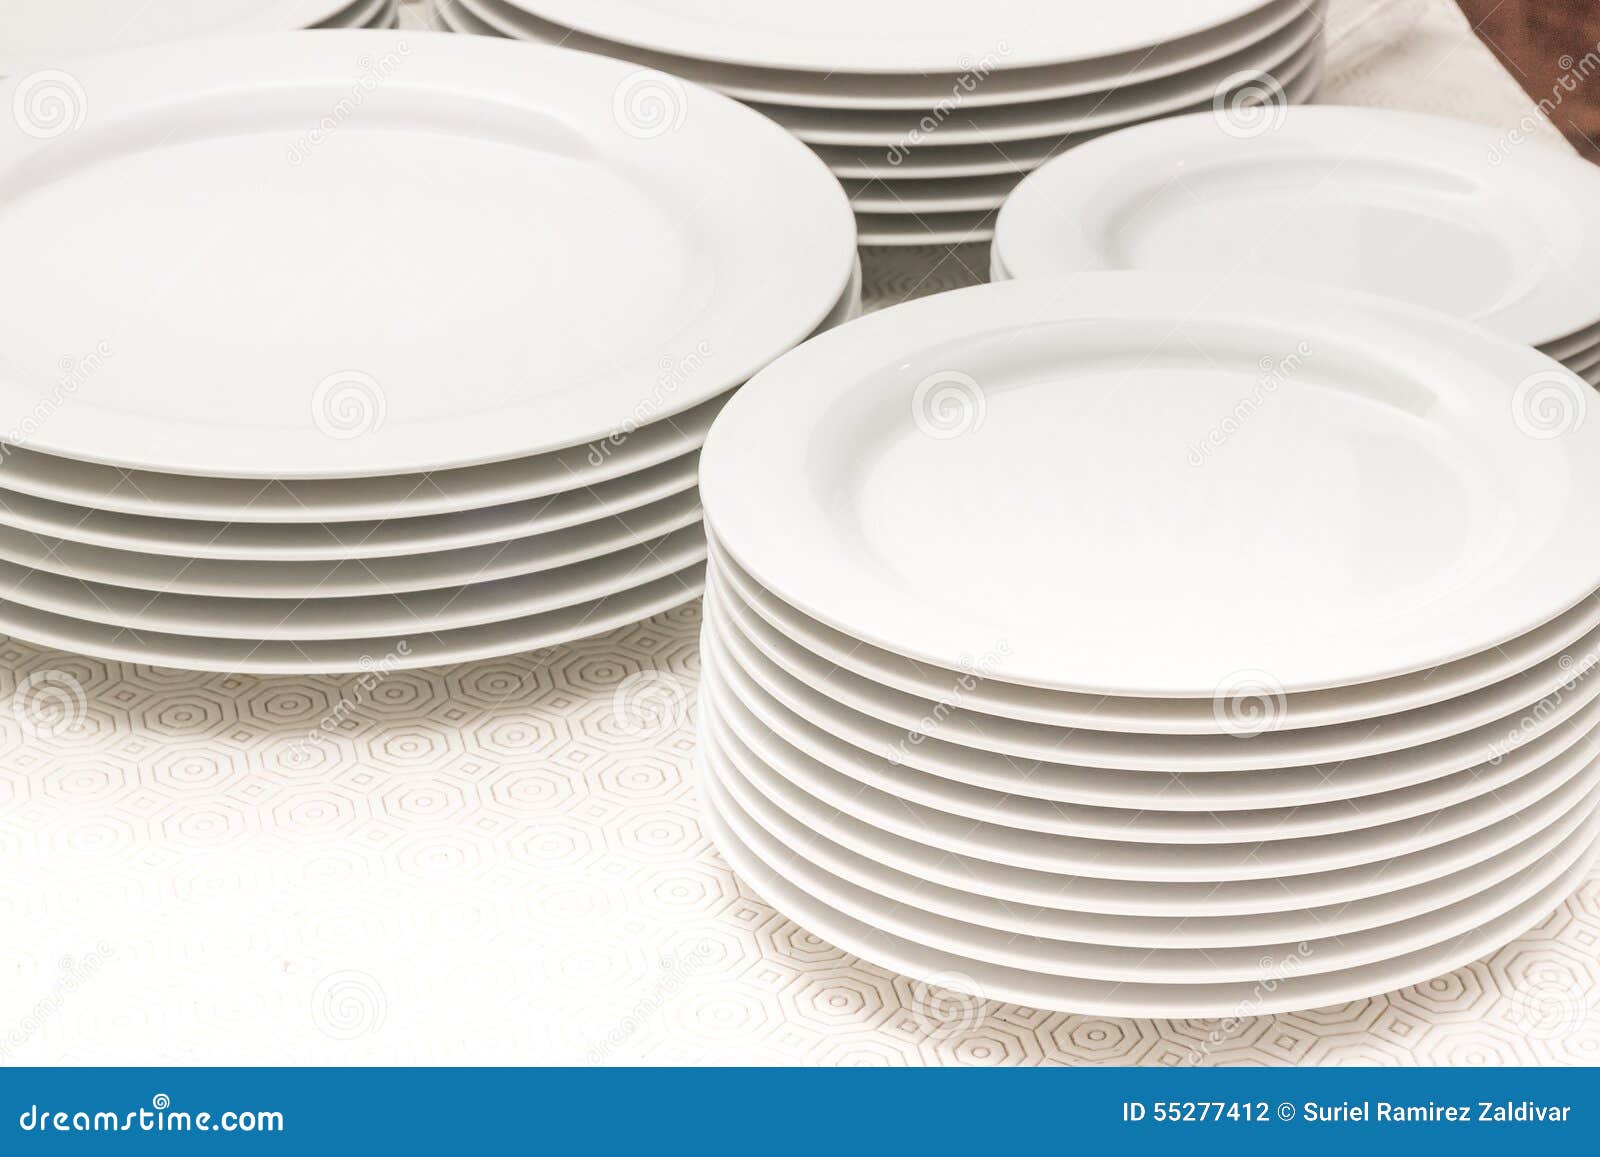 Platos blancos foto de archivo. Imagen de blanco, platos - 55277412